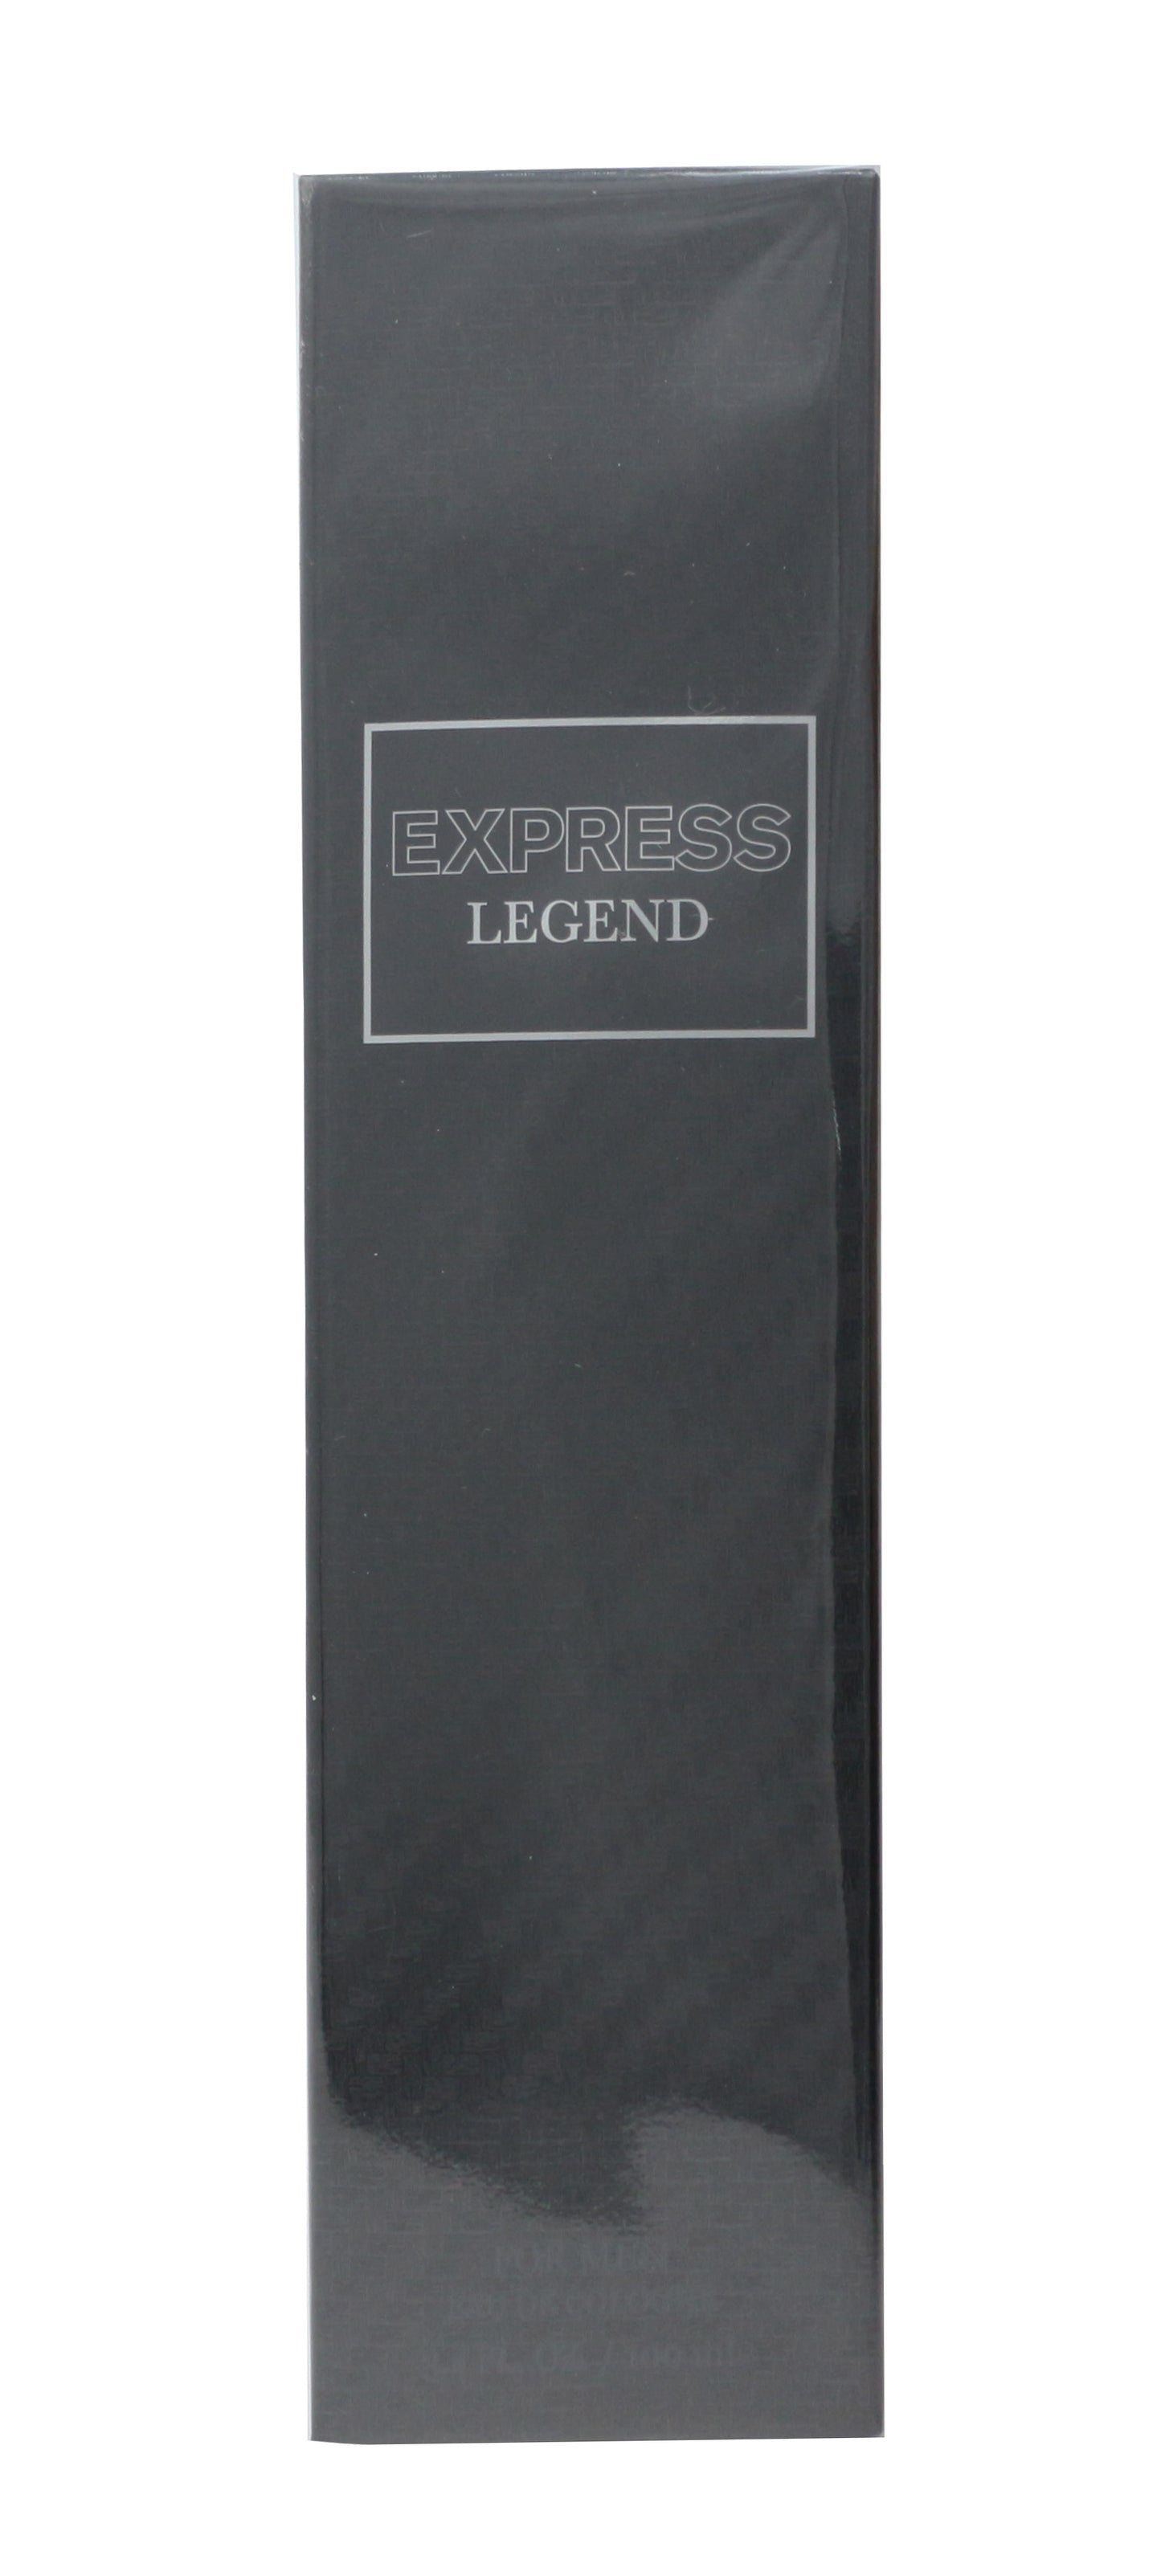 Express Legend Eau De Cologne 3.4oz/100ml New In Box